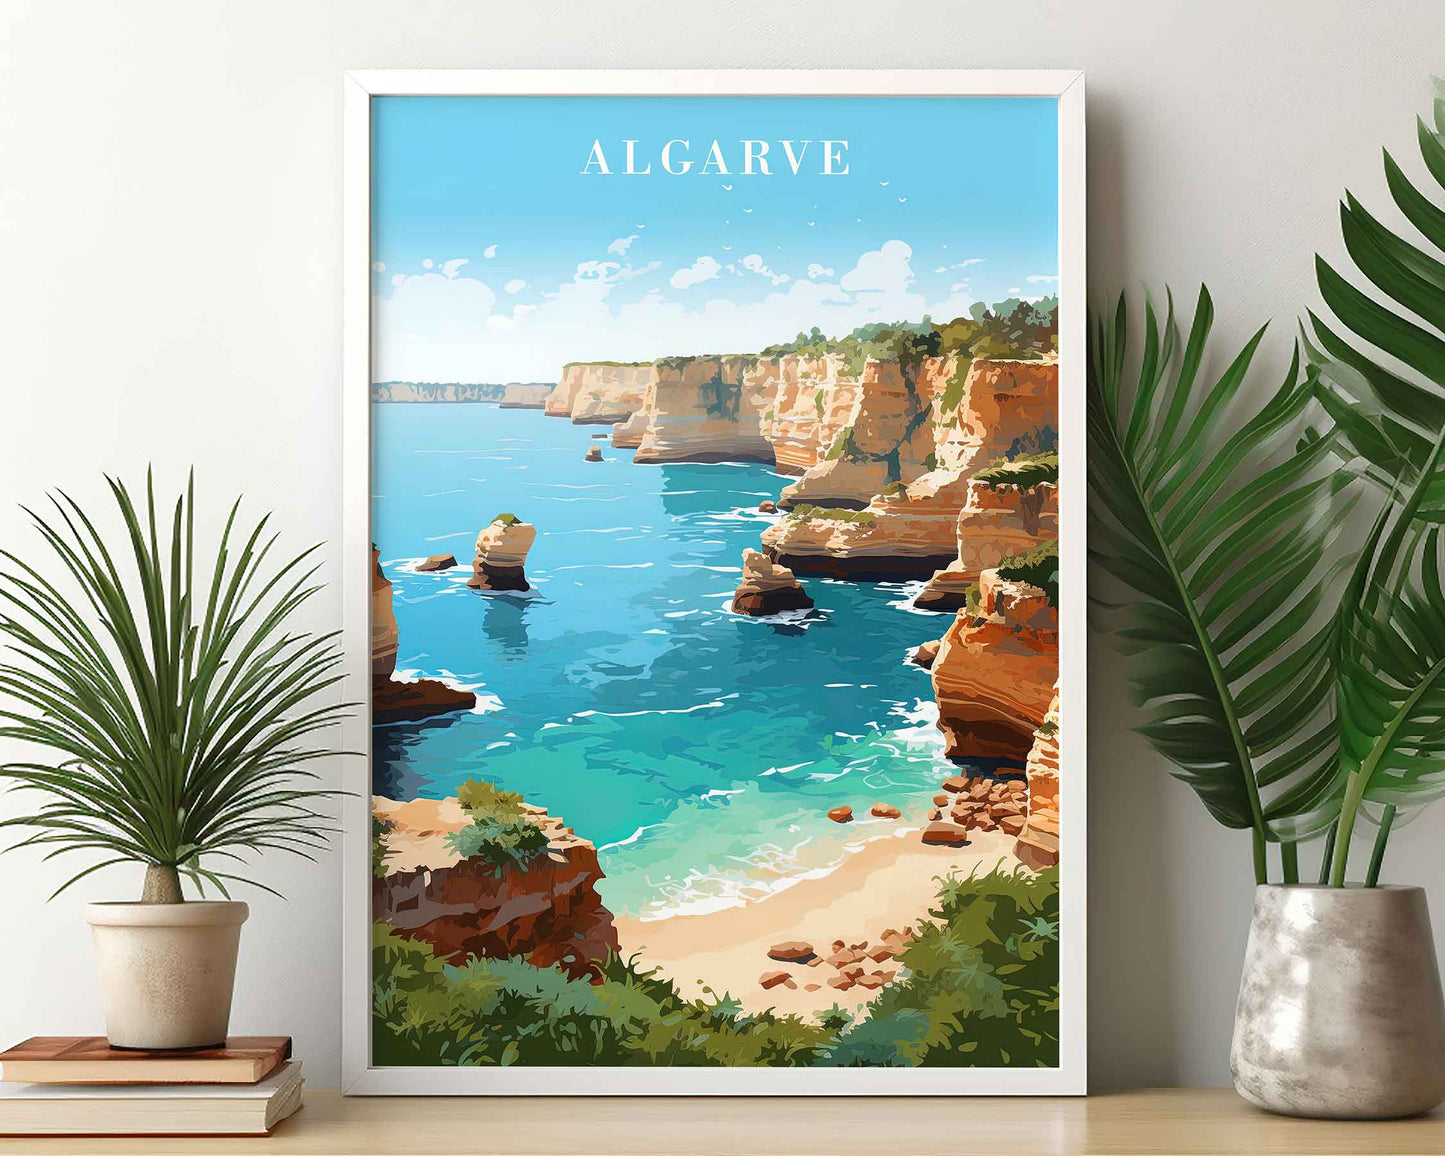 Framed Image of Algarve Portugal Wall Art Travel Poster Prints Illustration